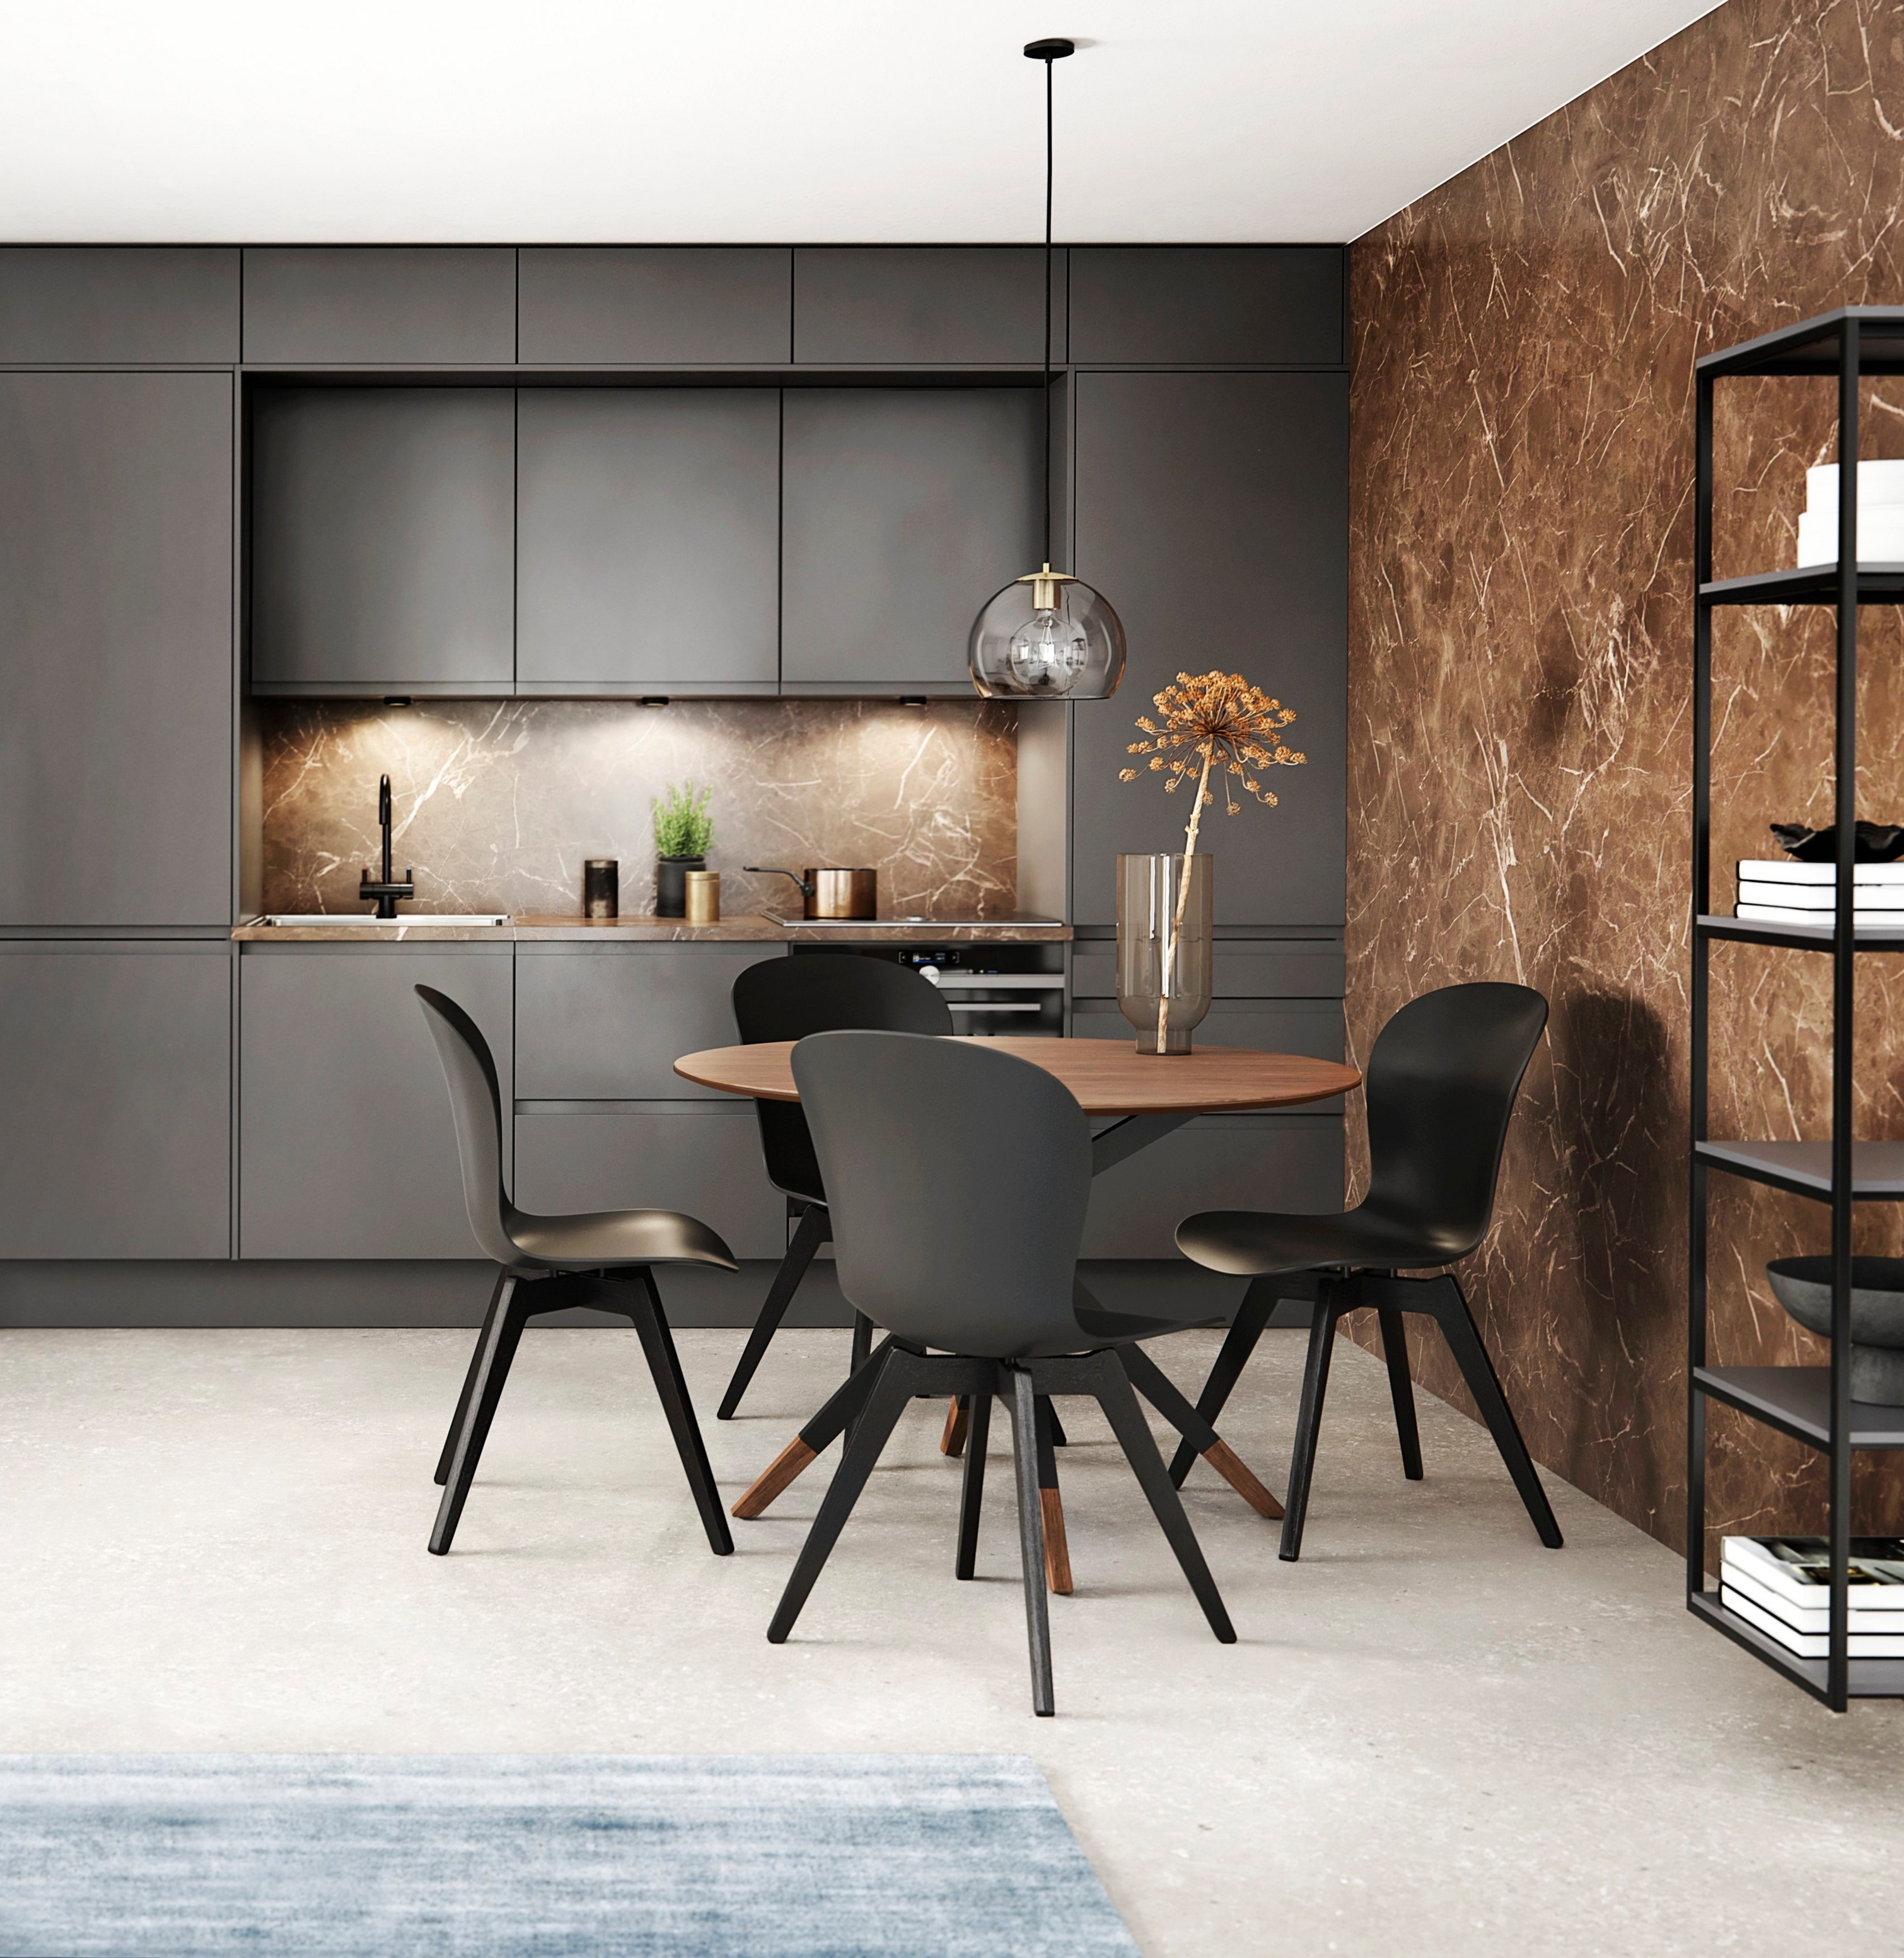 Moderne køkken med mørke køkkenskabe, stænkplade i marmor og spiseområde med rundt bord og sorte stole.